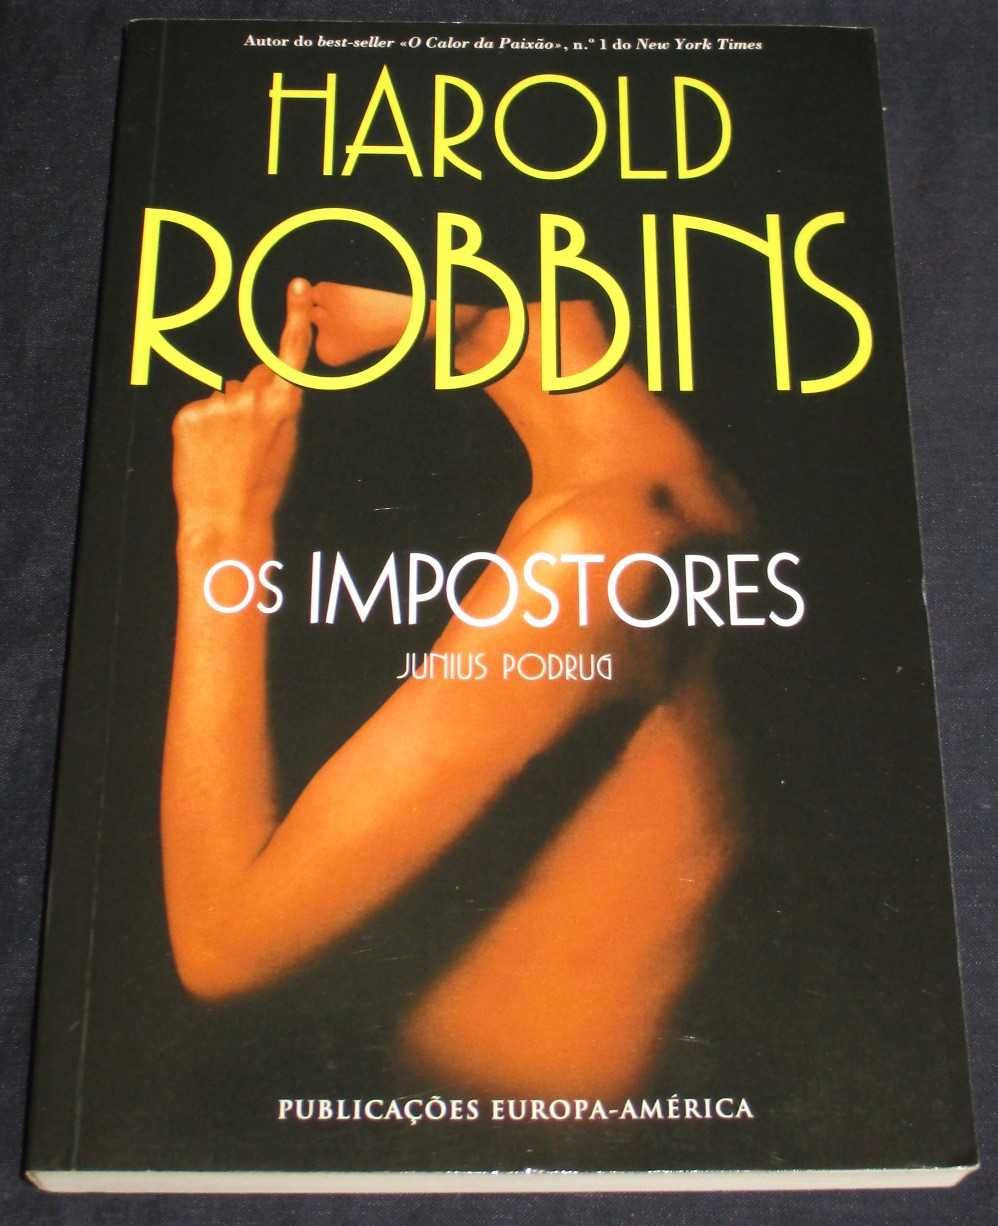 Livro Os Impostores Harold Robbins e Junius Podrug